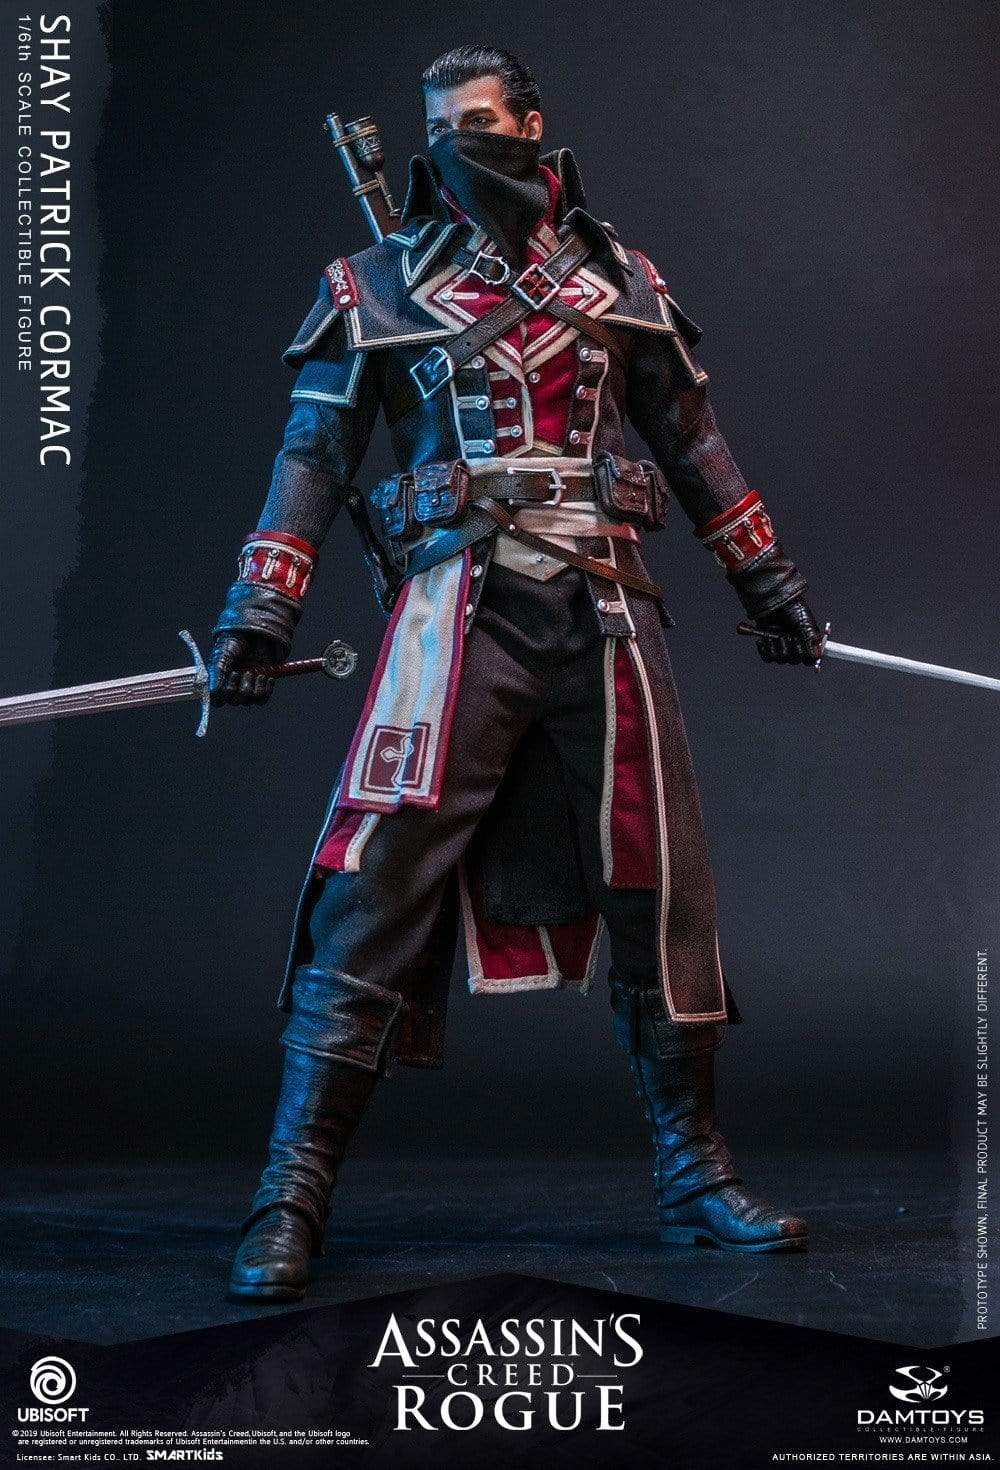 Shay Patrick Cormac Assassin's Creed: Rogue